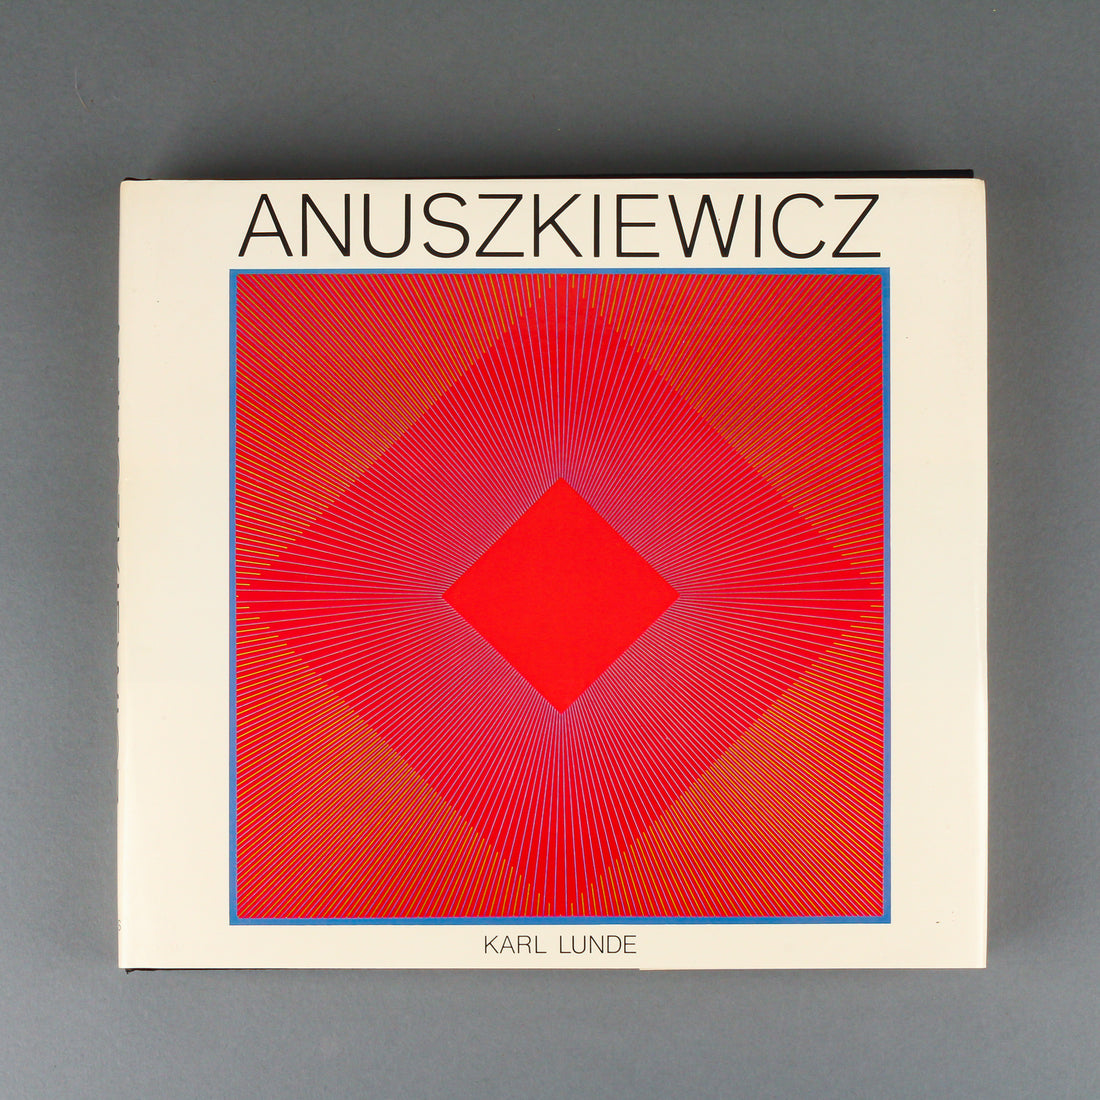 ANUSZKIEWICZ By Karl Lunde - Hardcover